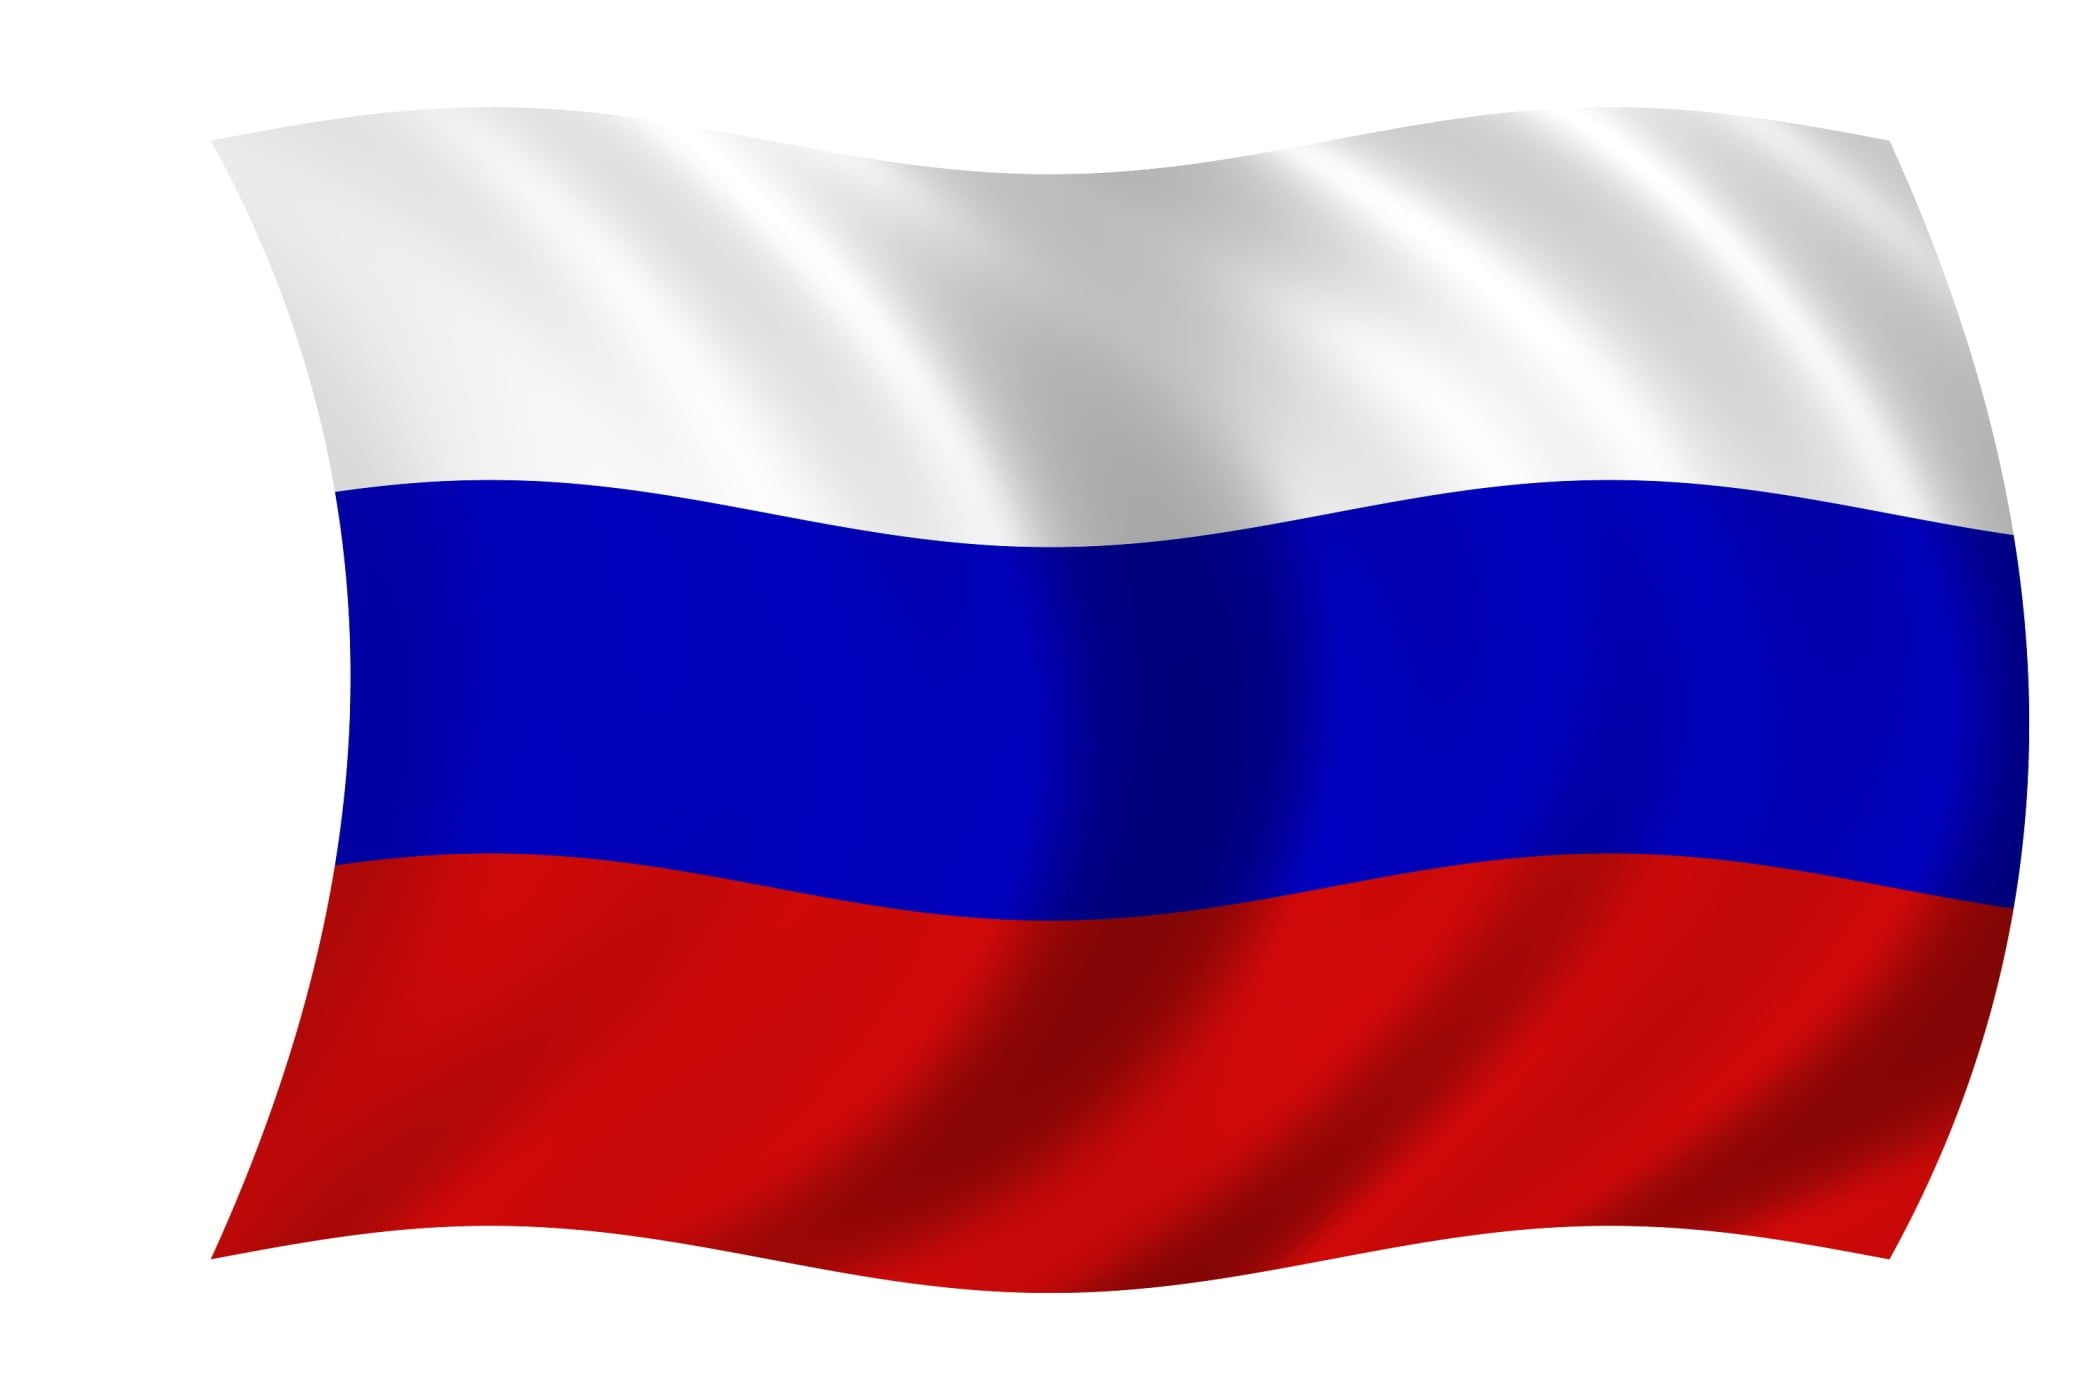 Рос картинка. Флаг России. Ф̆̈л̆̈ӑ̈г̆̈ р̆̈о̆̈с̆̈с̆̈й̈й̈. Флаг Триколор России. Флаг России размер 90х135 см.